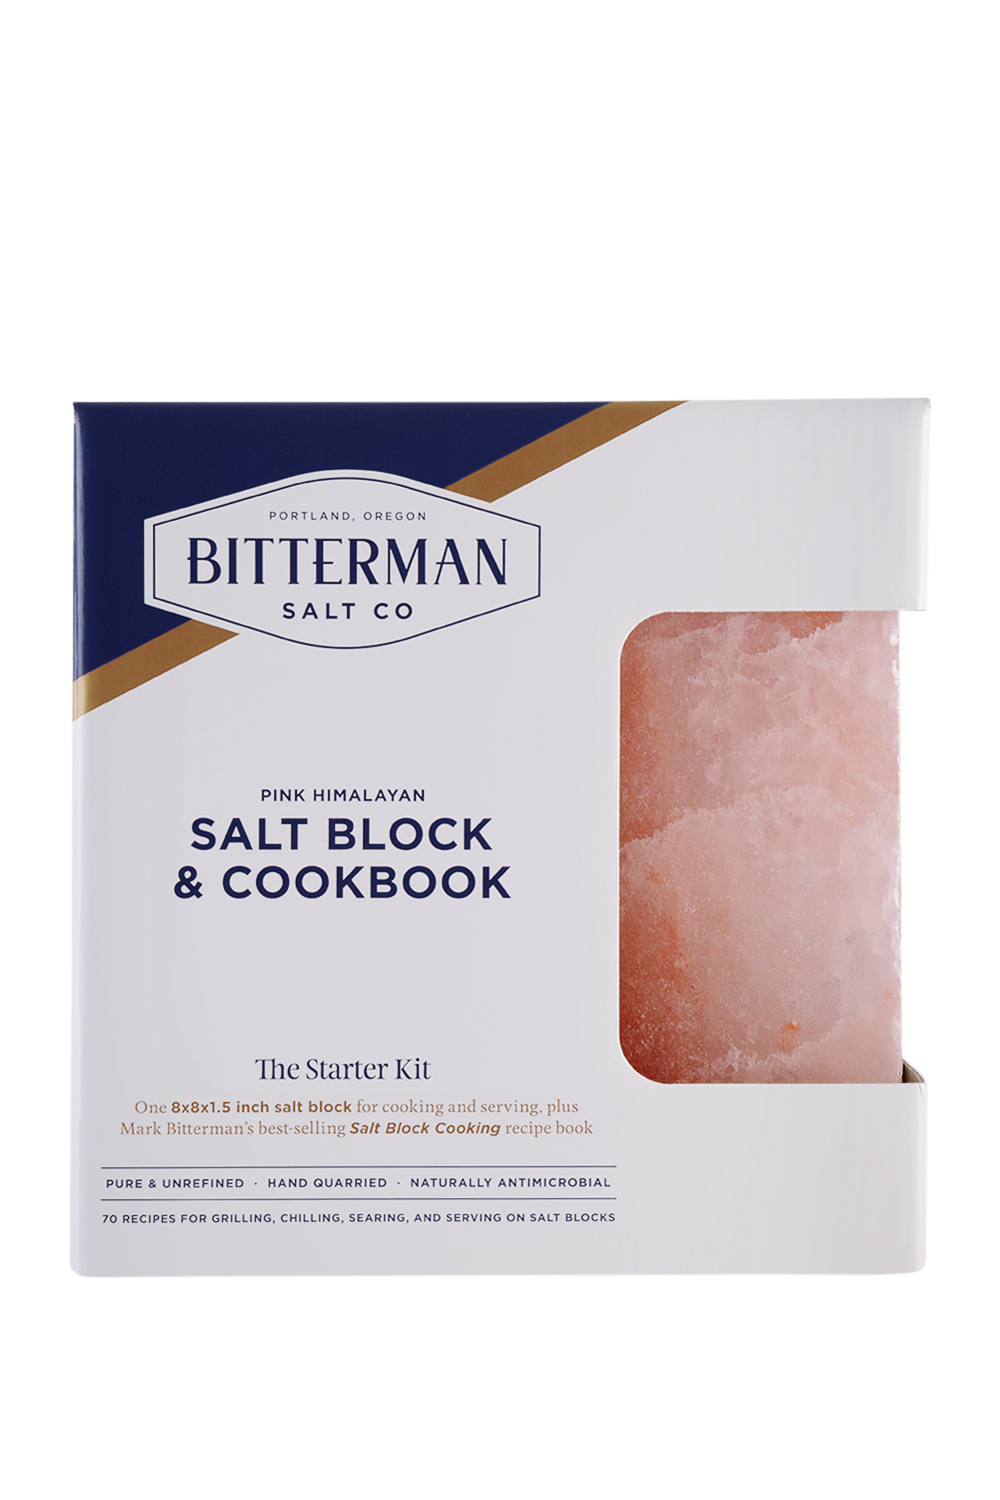 How to cook on a Himalayan salt block - The Manual